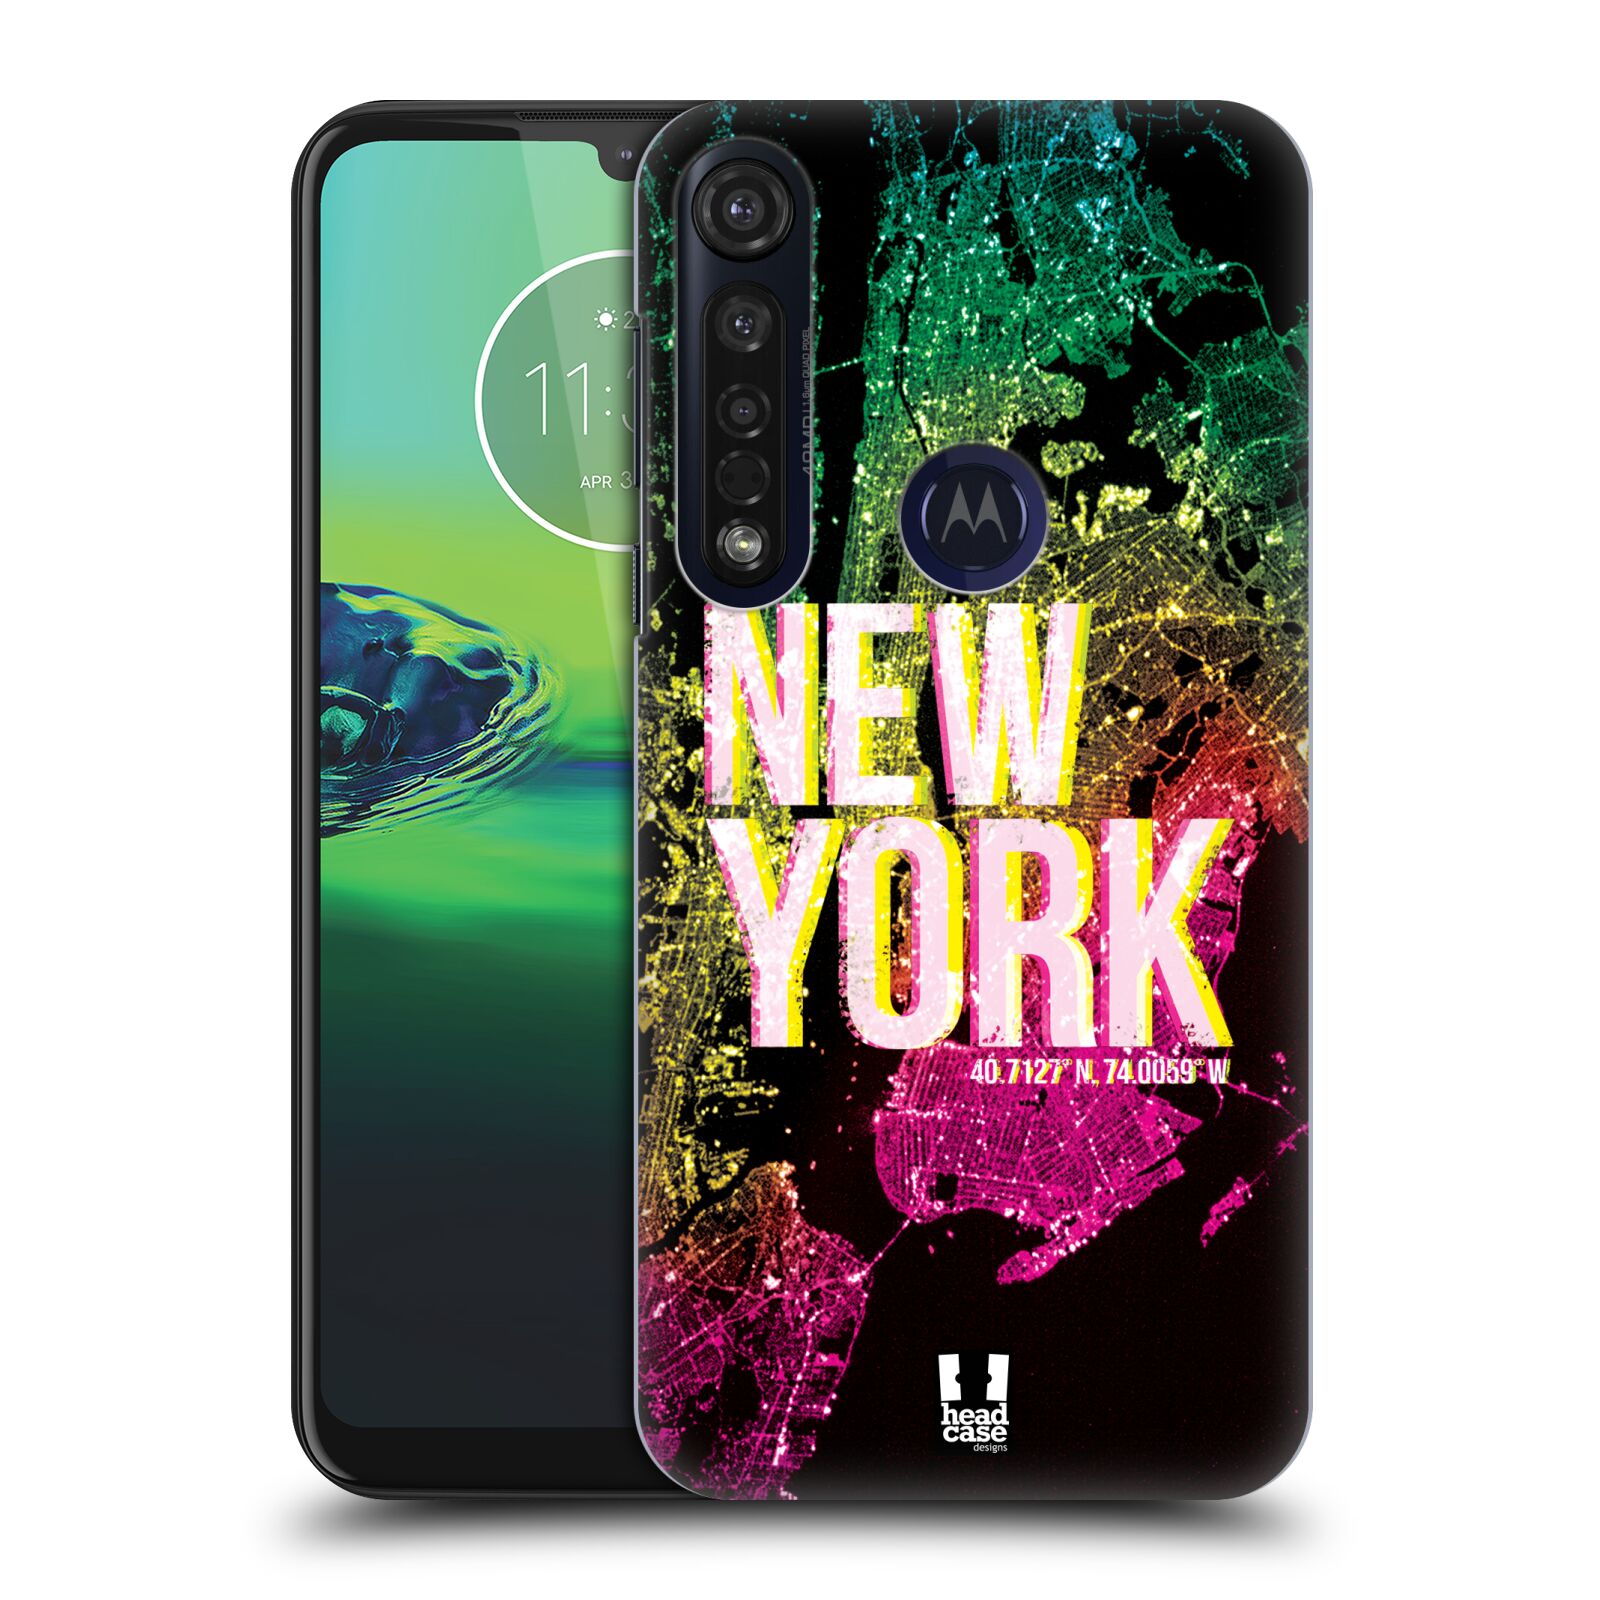 Pouzdro na mobil Motorola Moto G8 PLUS - HEAD CASE - vzor Světla známých měst, Satelitní snímky USA, NEW YORK